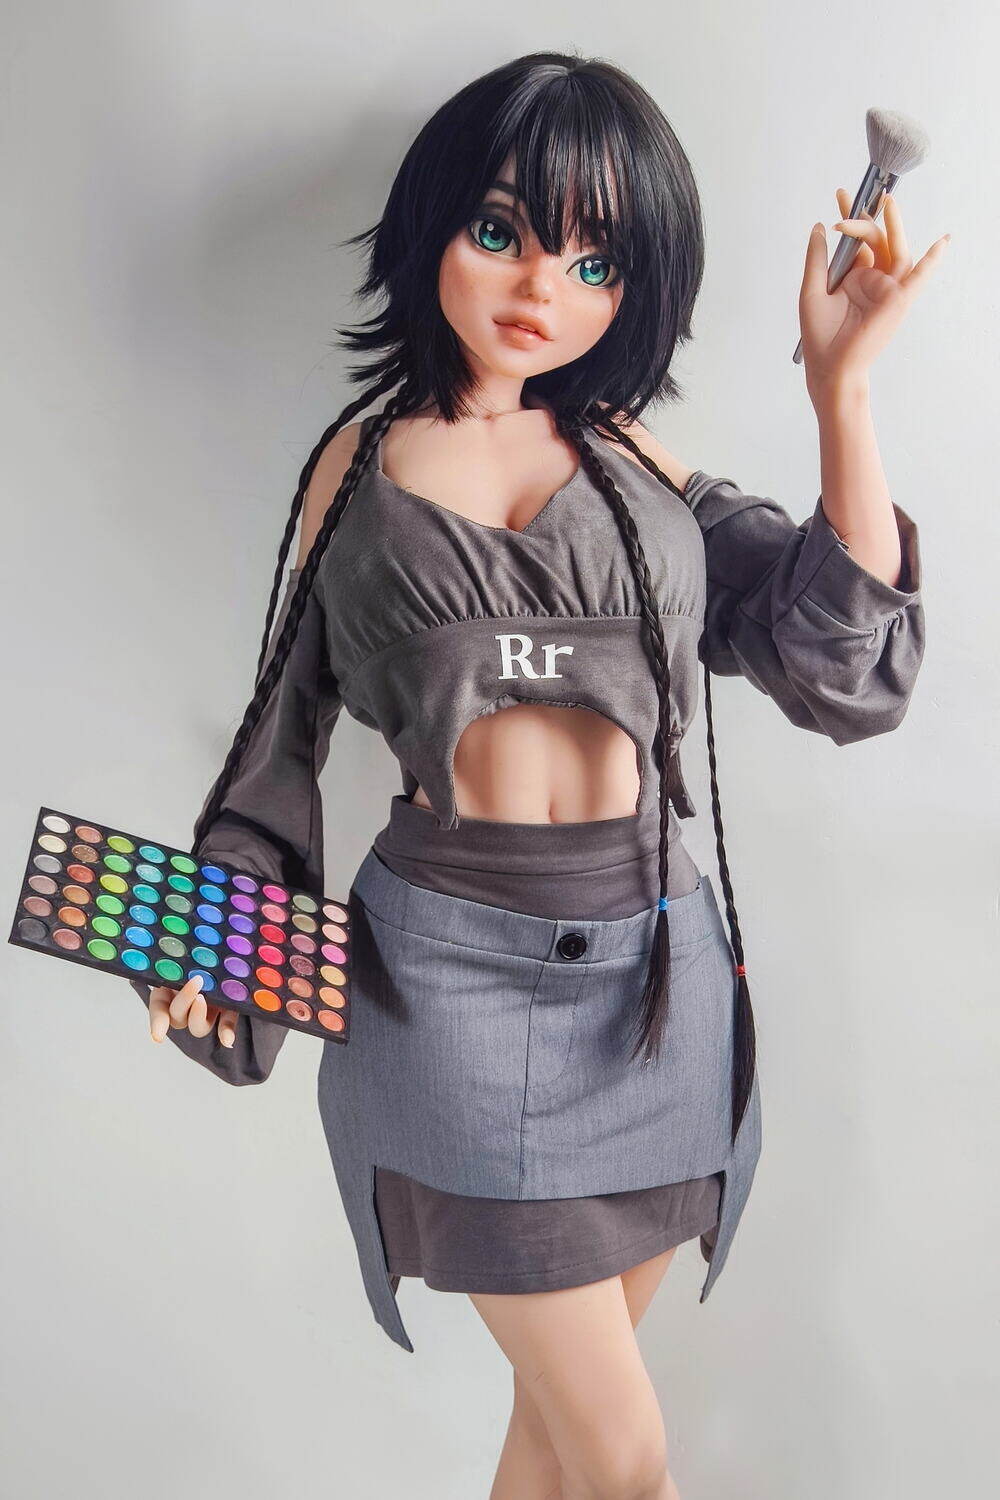 Helena - 148cm(4ft10) Optional Elsababe 148cm(4ft10) Real Dolls Come Sex Doll image1